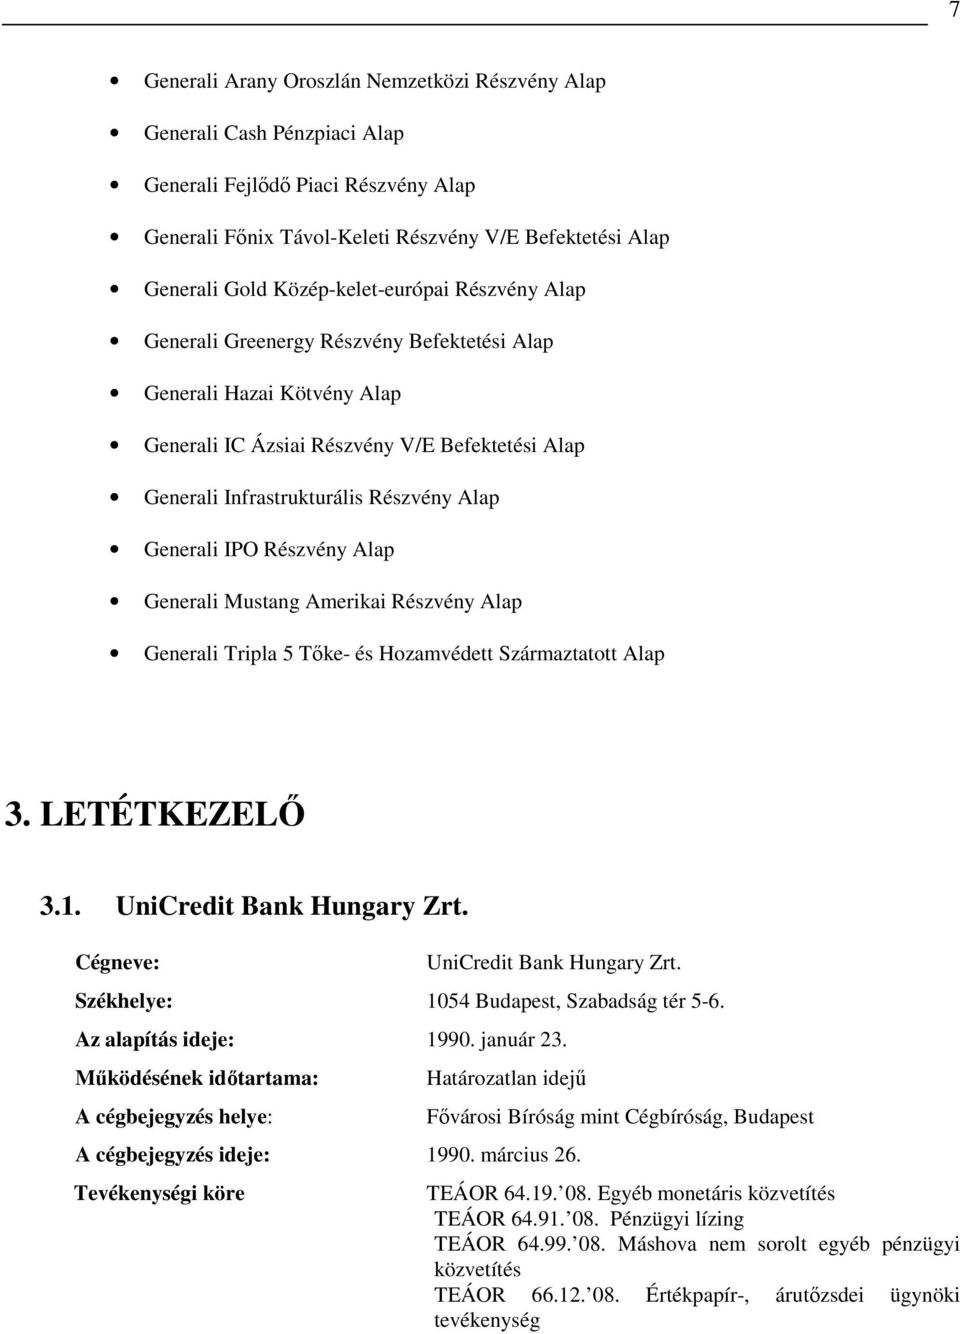 Generali IPO Részvény Alap Generali Mustang Amerikai Részvény Alap Generali Tripla 5 Tıke- és Hozamvédett Származtatott Alap 3. LETÉTKEZELİ 3.1. UniCredit Bank Hungary Zrt.